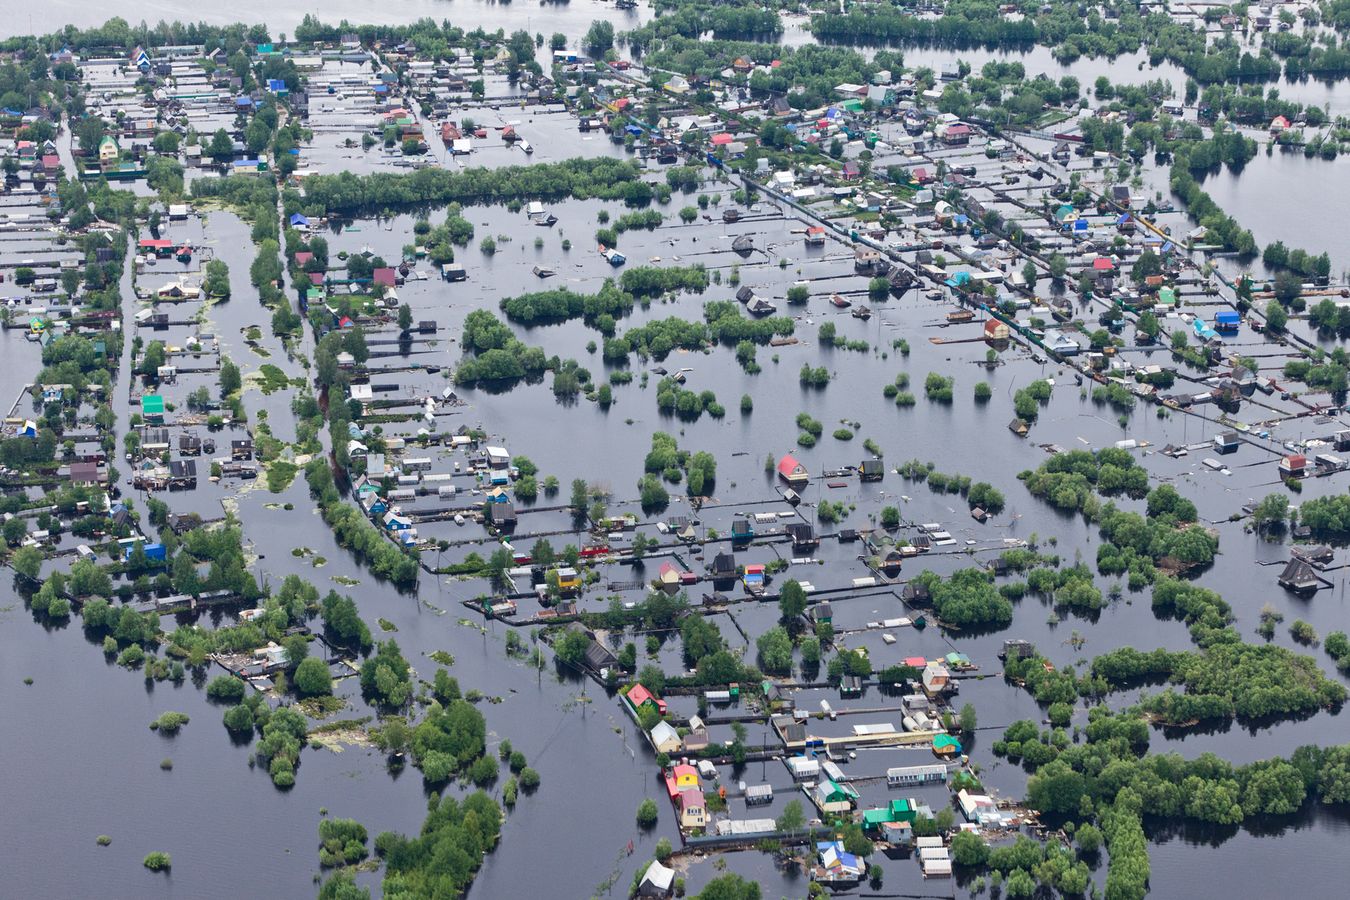 Logements VS submersions et inondations : la stratégie mise en place dans une zone à risque du Calvados